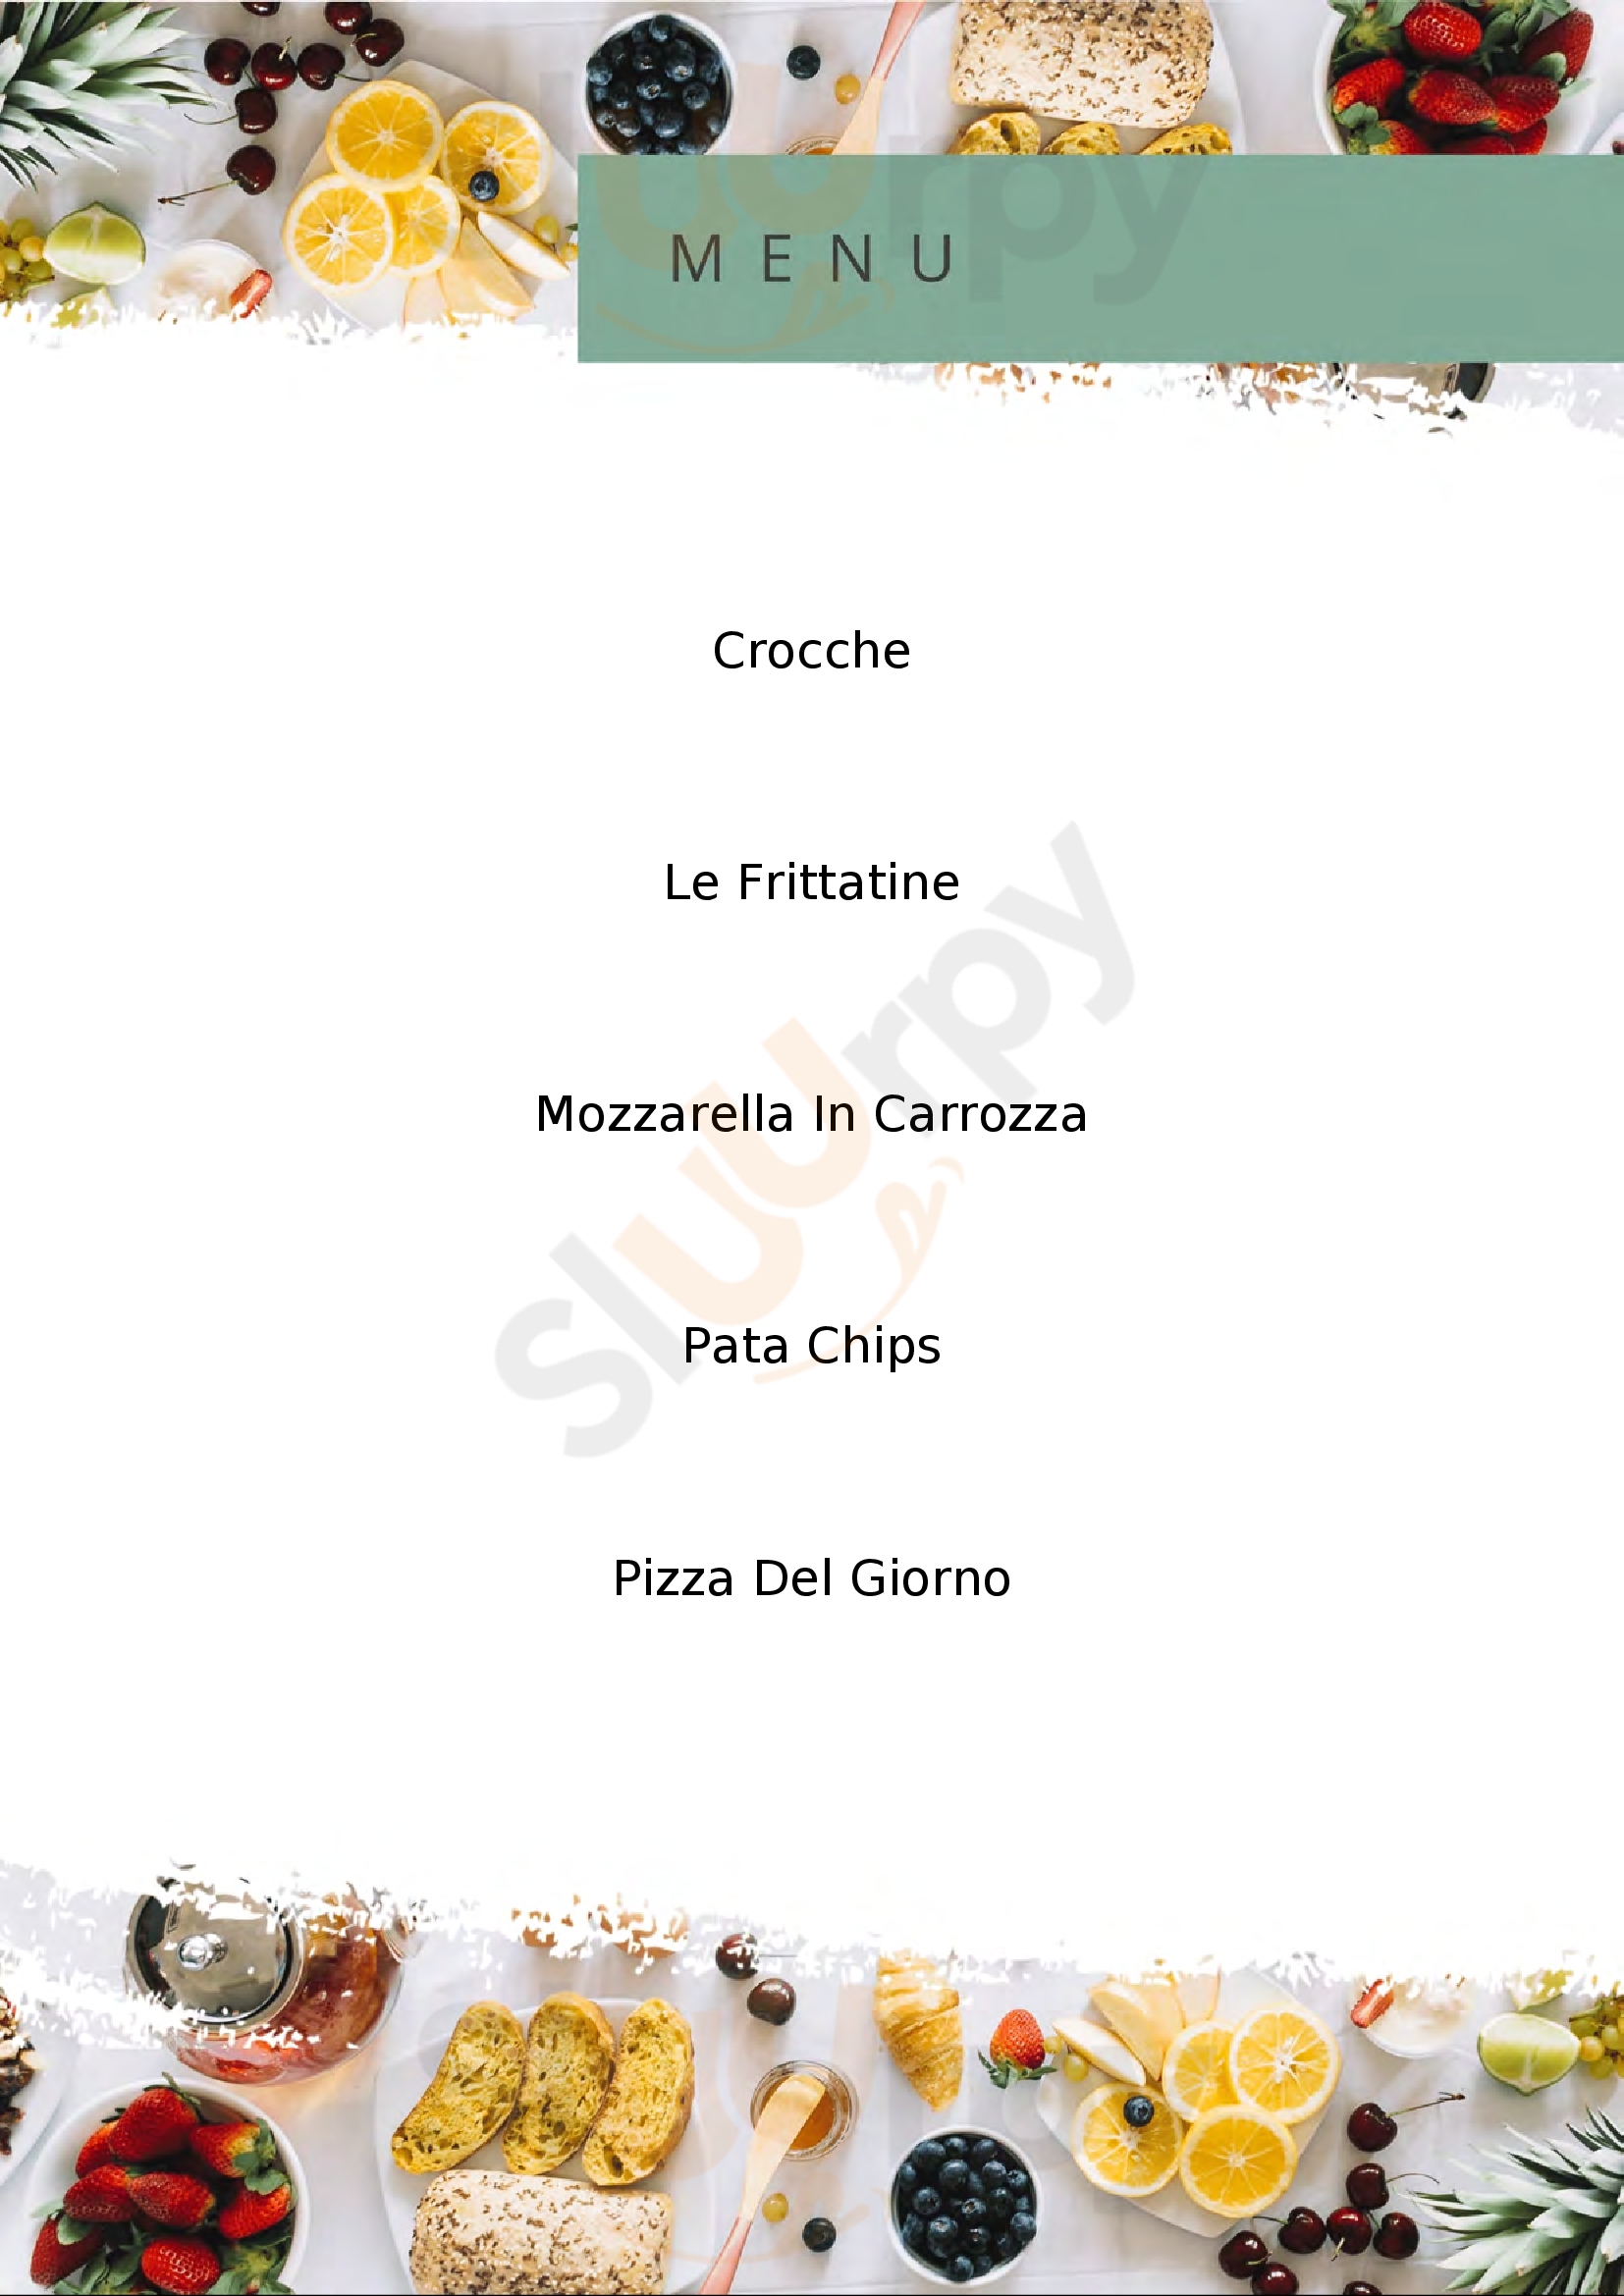 Pizzeria Kalo Monteforte Irpino menù 1 pagina